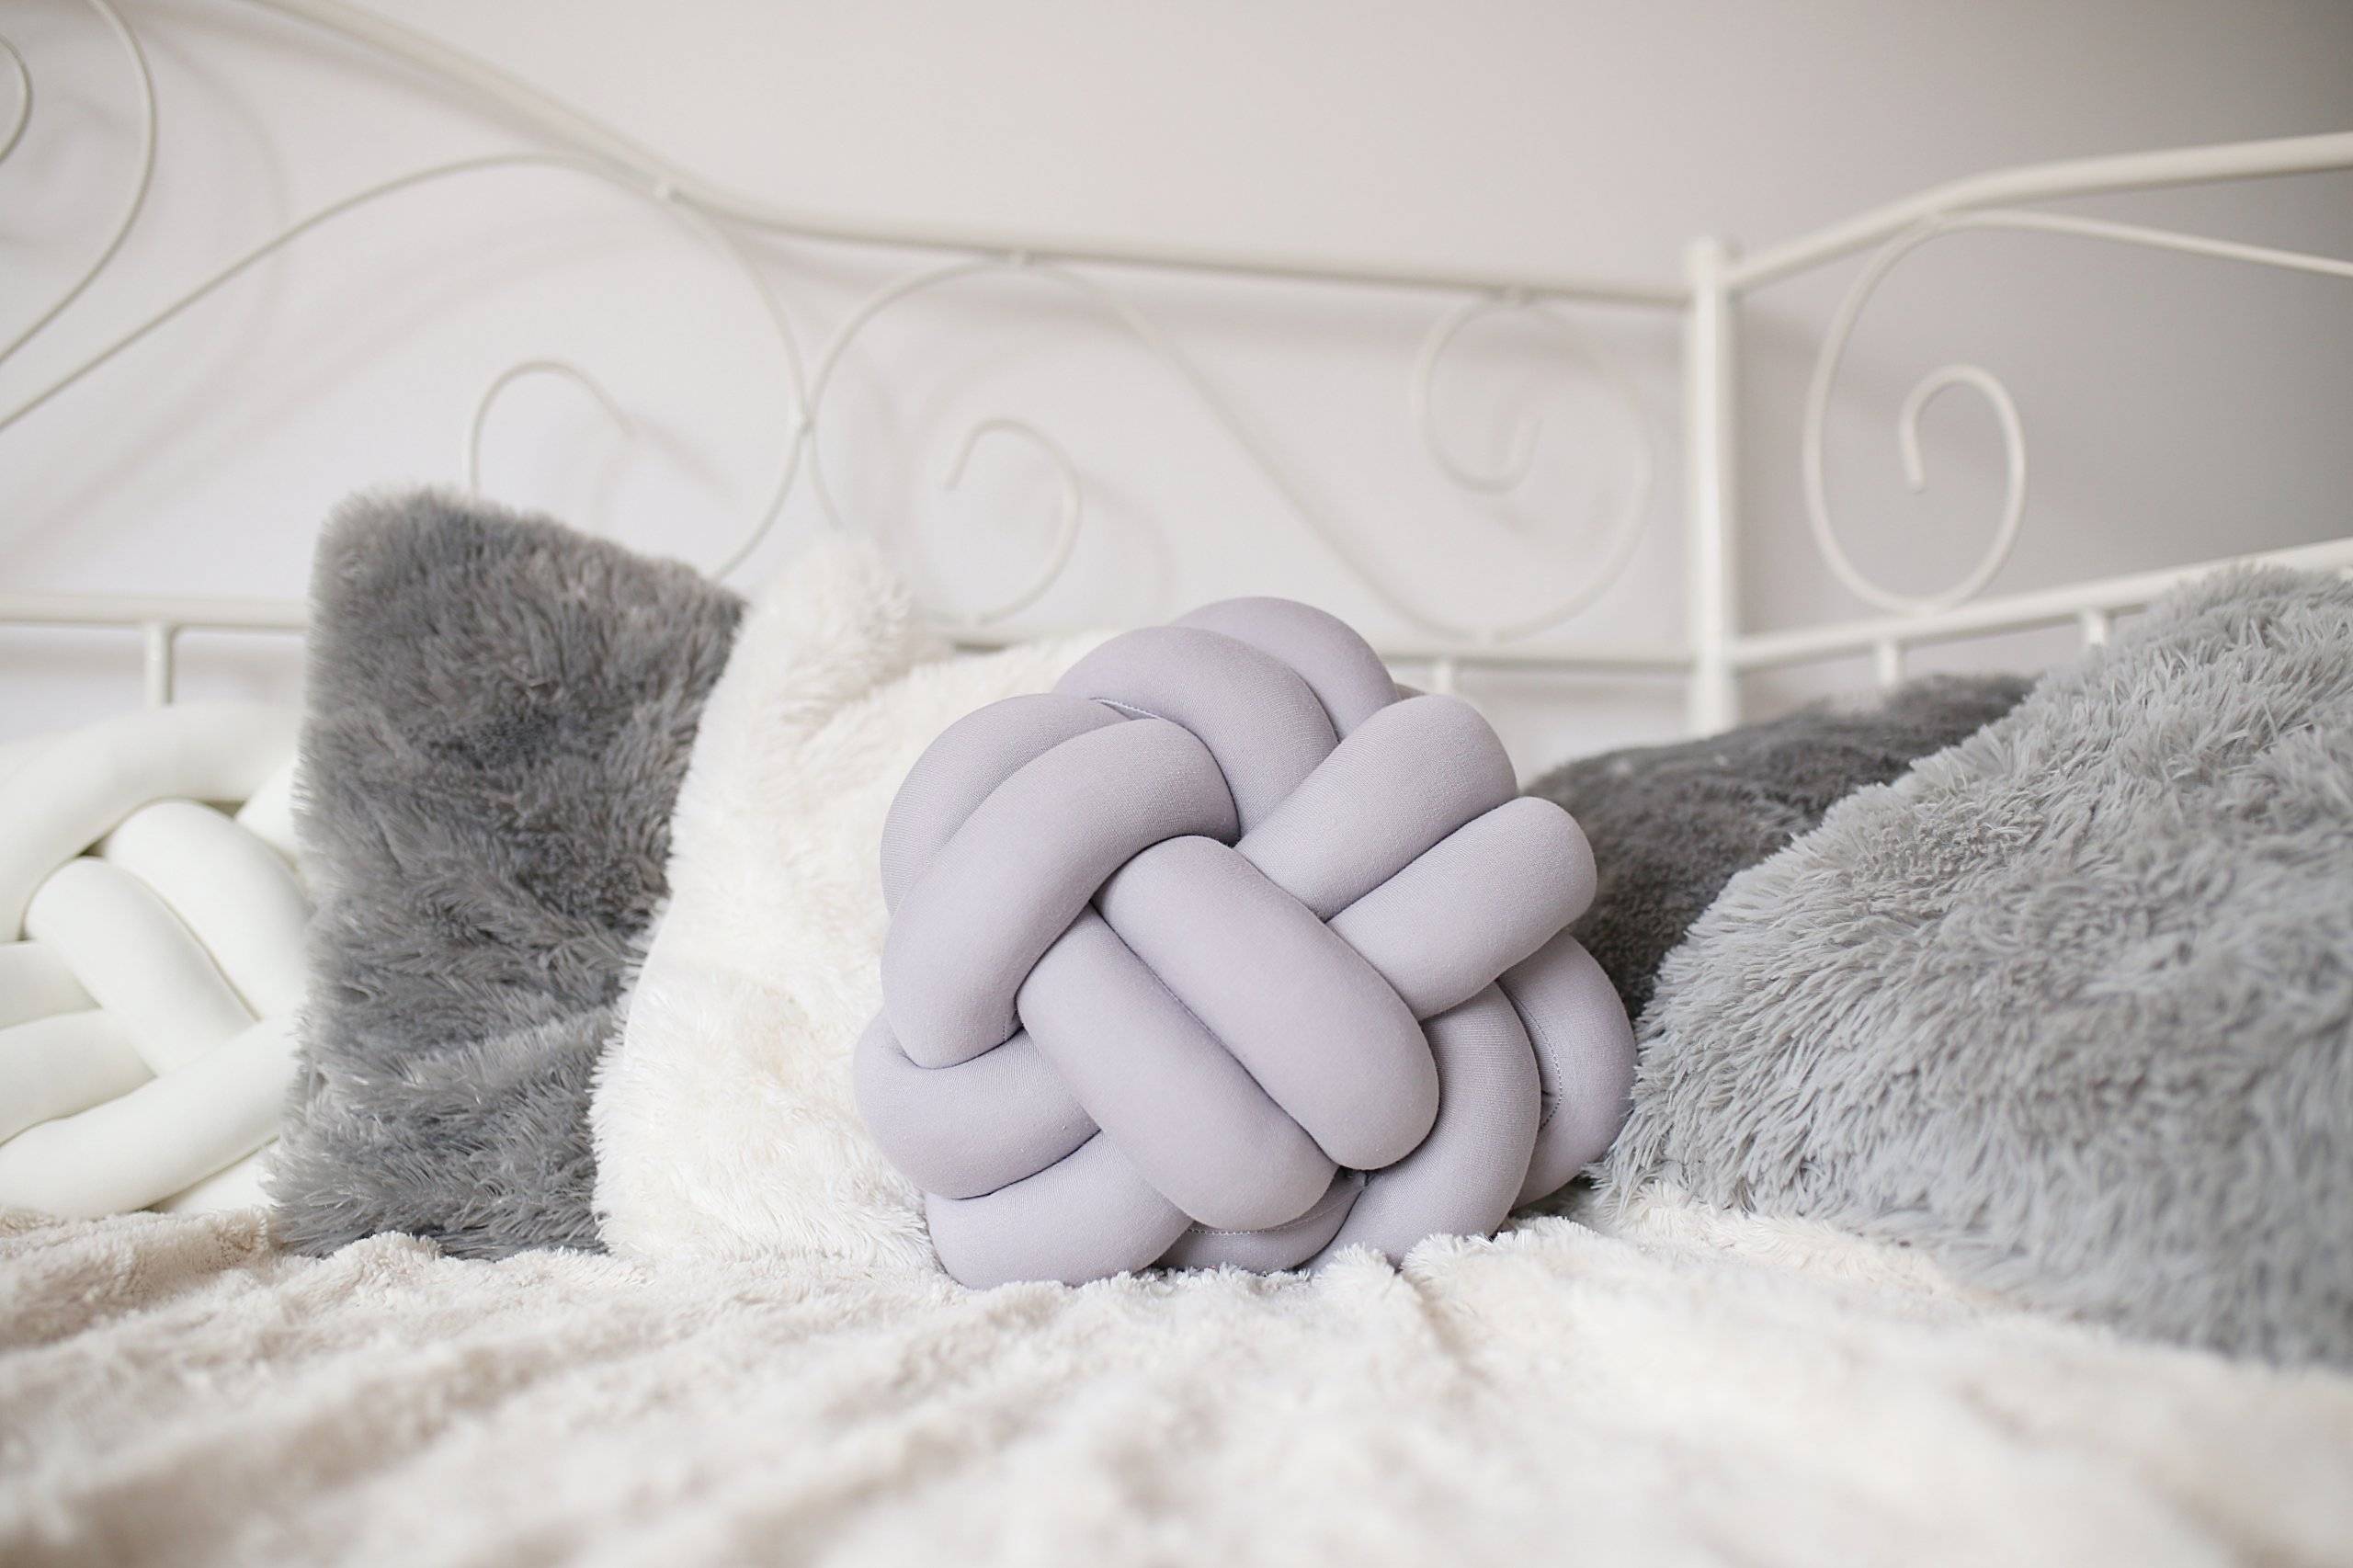 Декоративные подушки своими руками: 130 фото стильных и необычных вариантов подушек